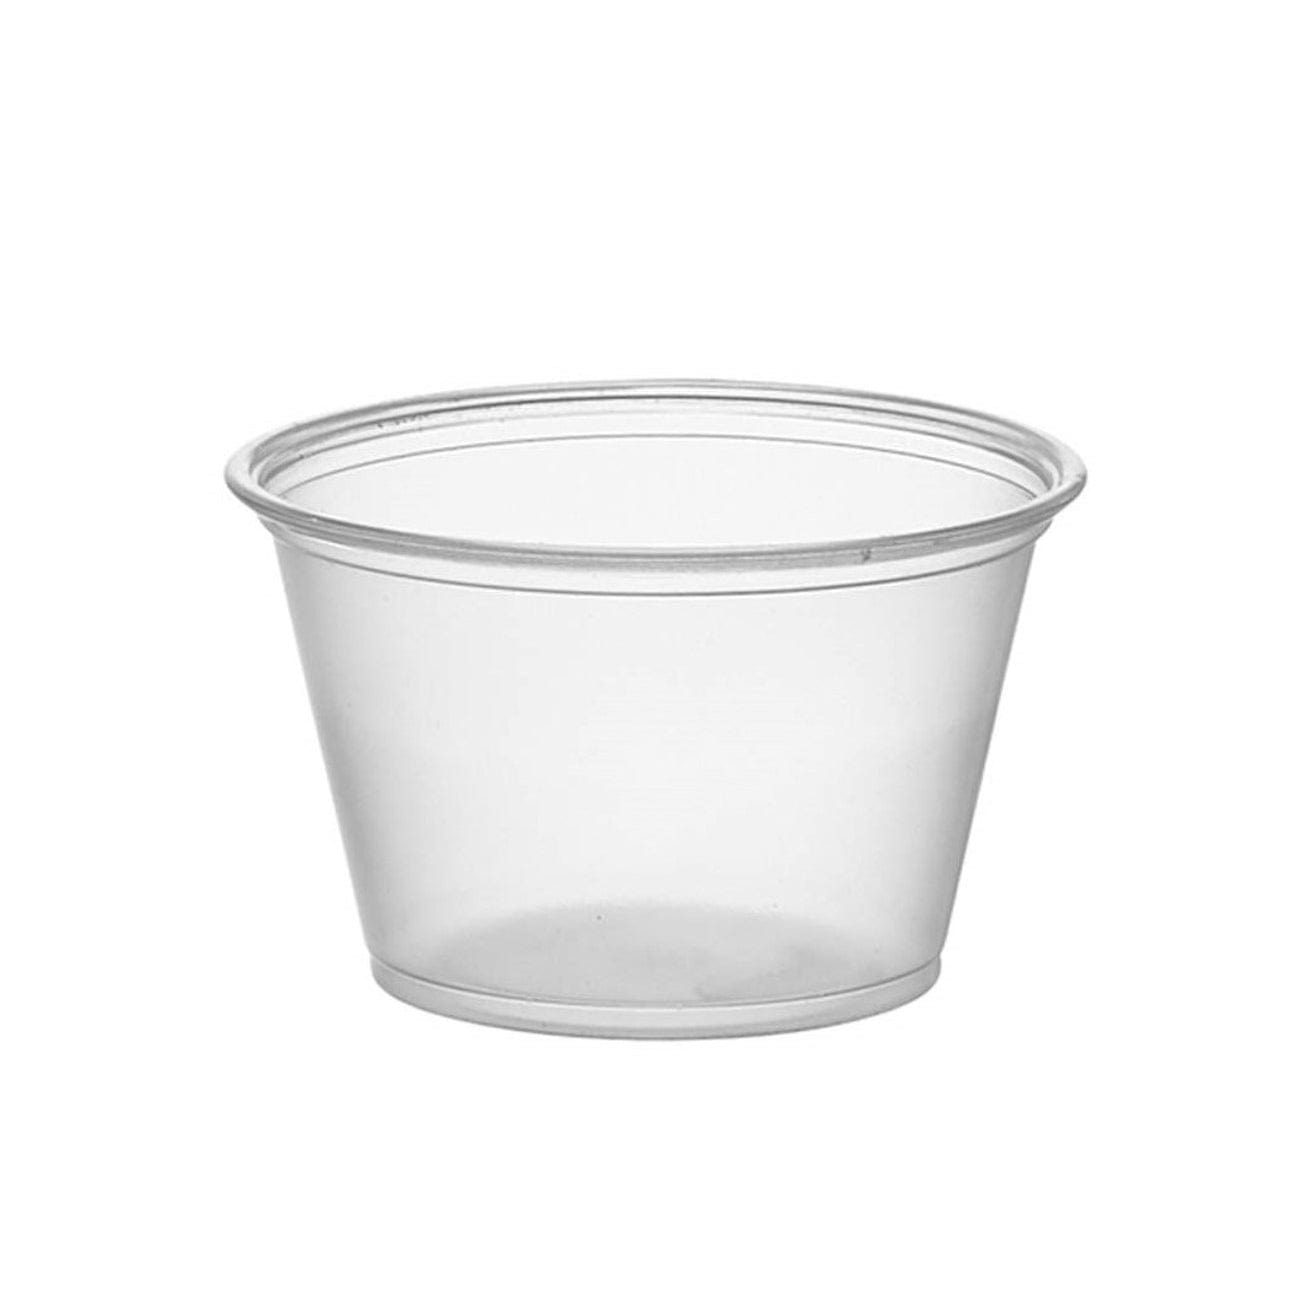 Choice 4 oz. Black Plastic Souffle Cup / Portion Cup - 2500/Case